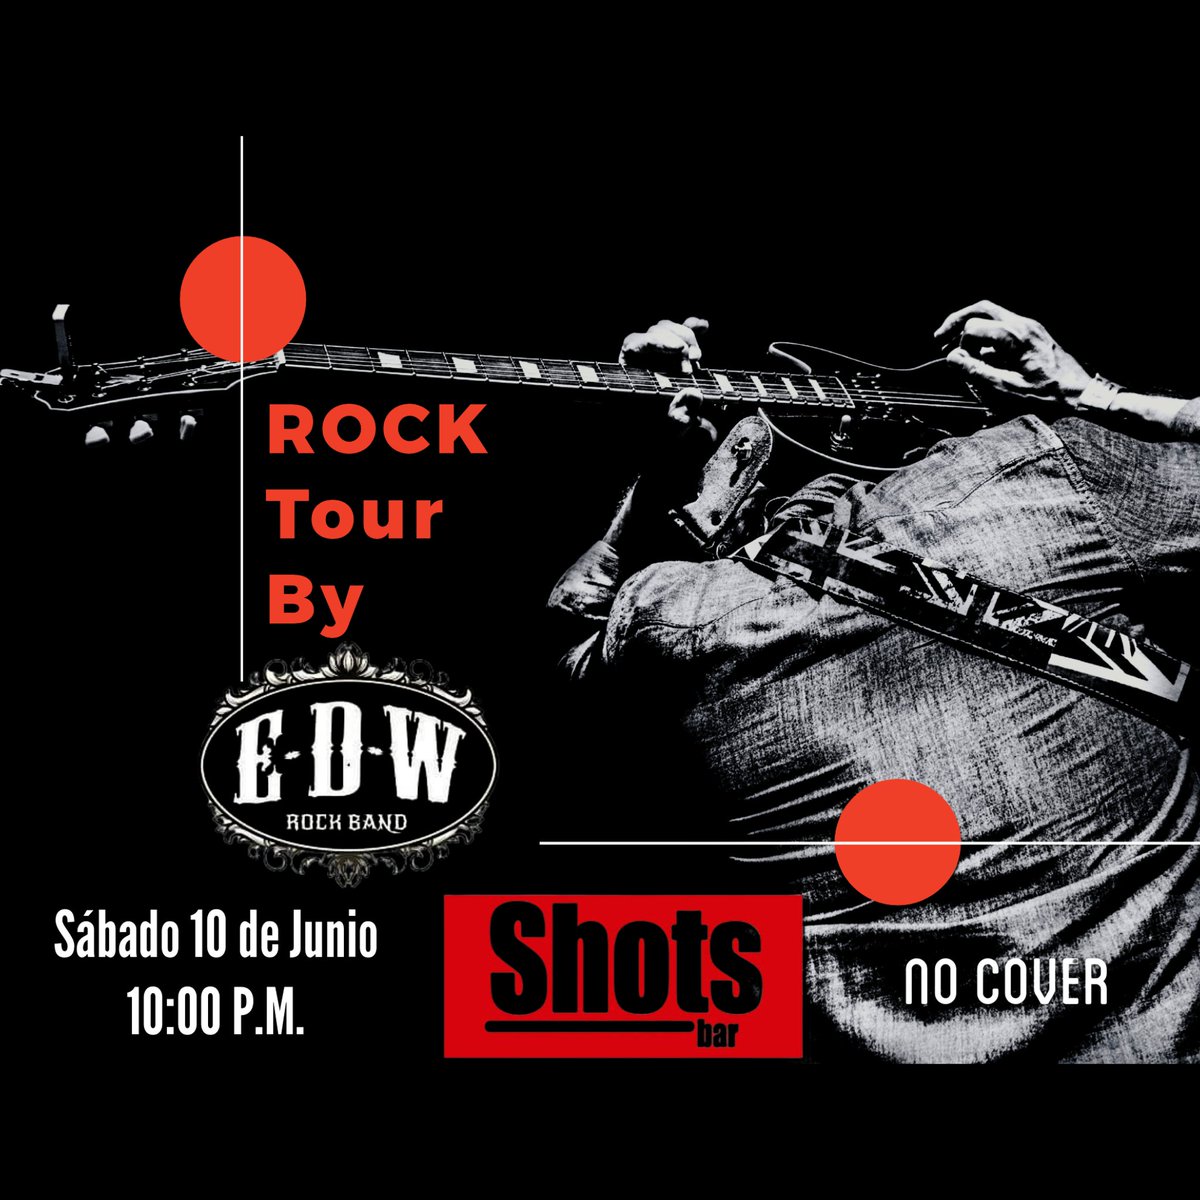 Rock Tour by @edwrockband sábado 10 de junio, 10:00 P.M. #shotsbar Roberto Pastoriza 212 #rock80s90s #rockclasico #classicrockmusic #rockdominicano #rockalternativo #Rockbyedw #Rocktourbyedw #rocktour🔥